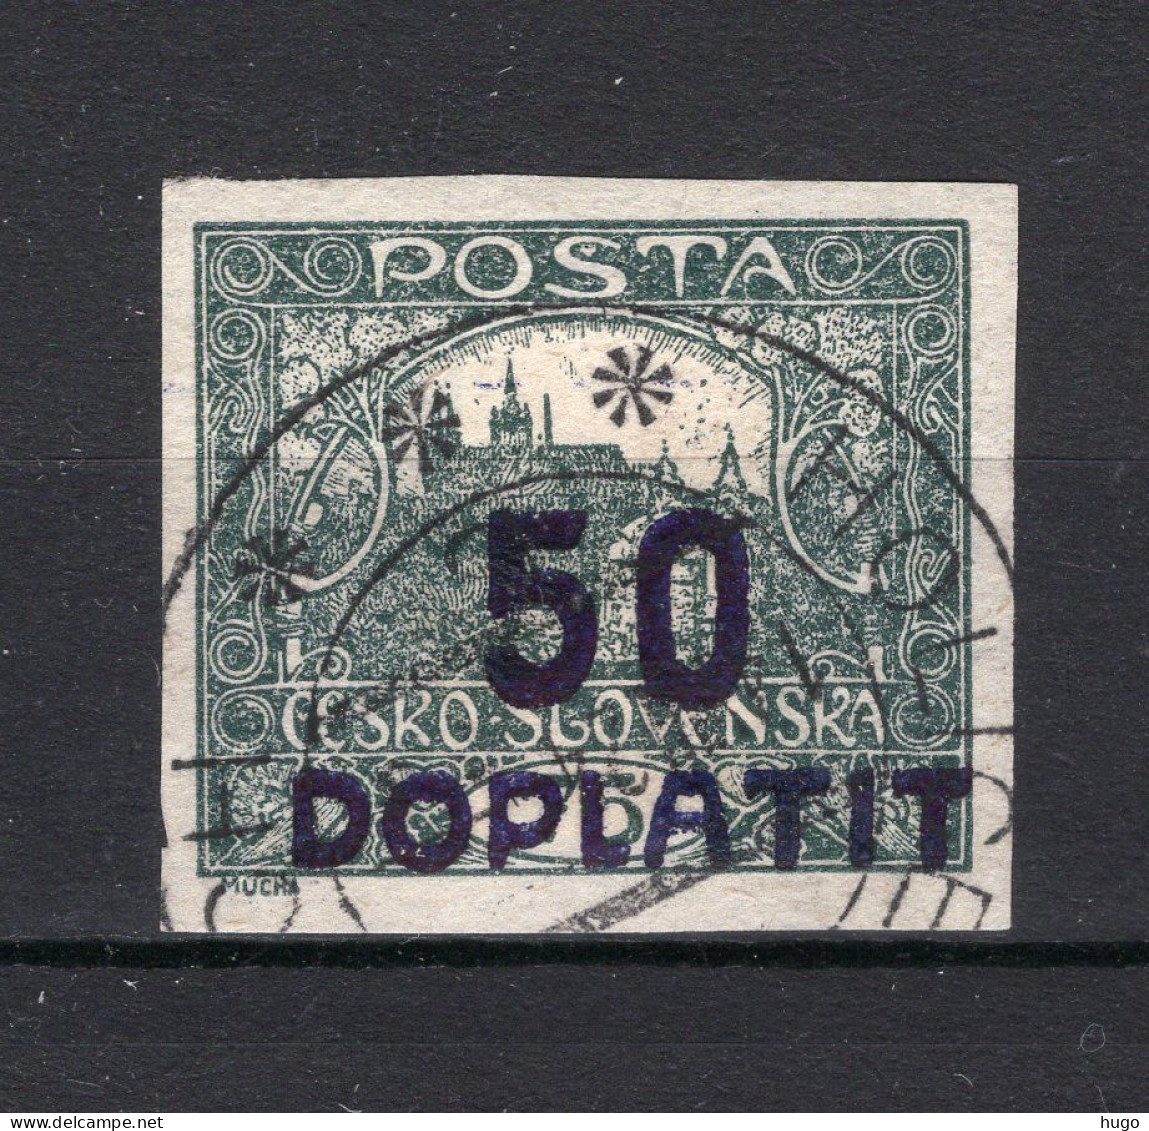 TSJECHOSLOVAKIJE Yt. T16° Gestempeld Portzegel 1922-1923 - Postage Due